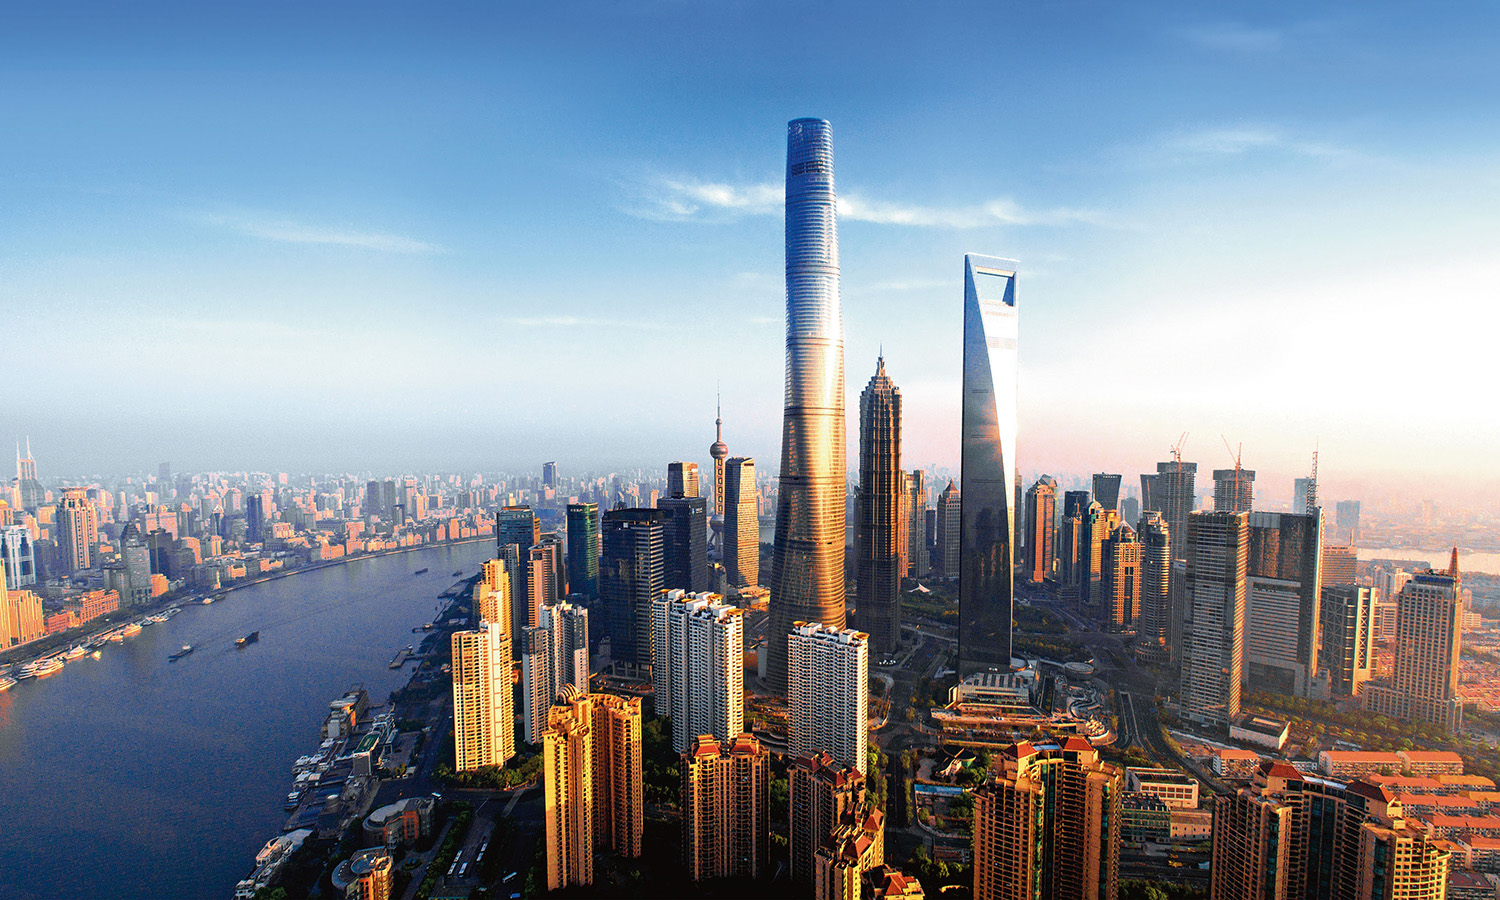 Shanghai Tower, Gensler (632m)